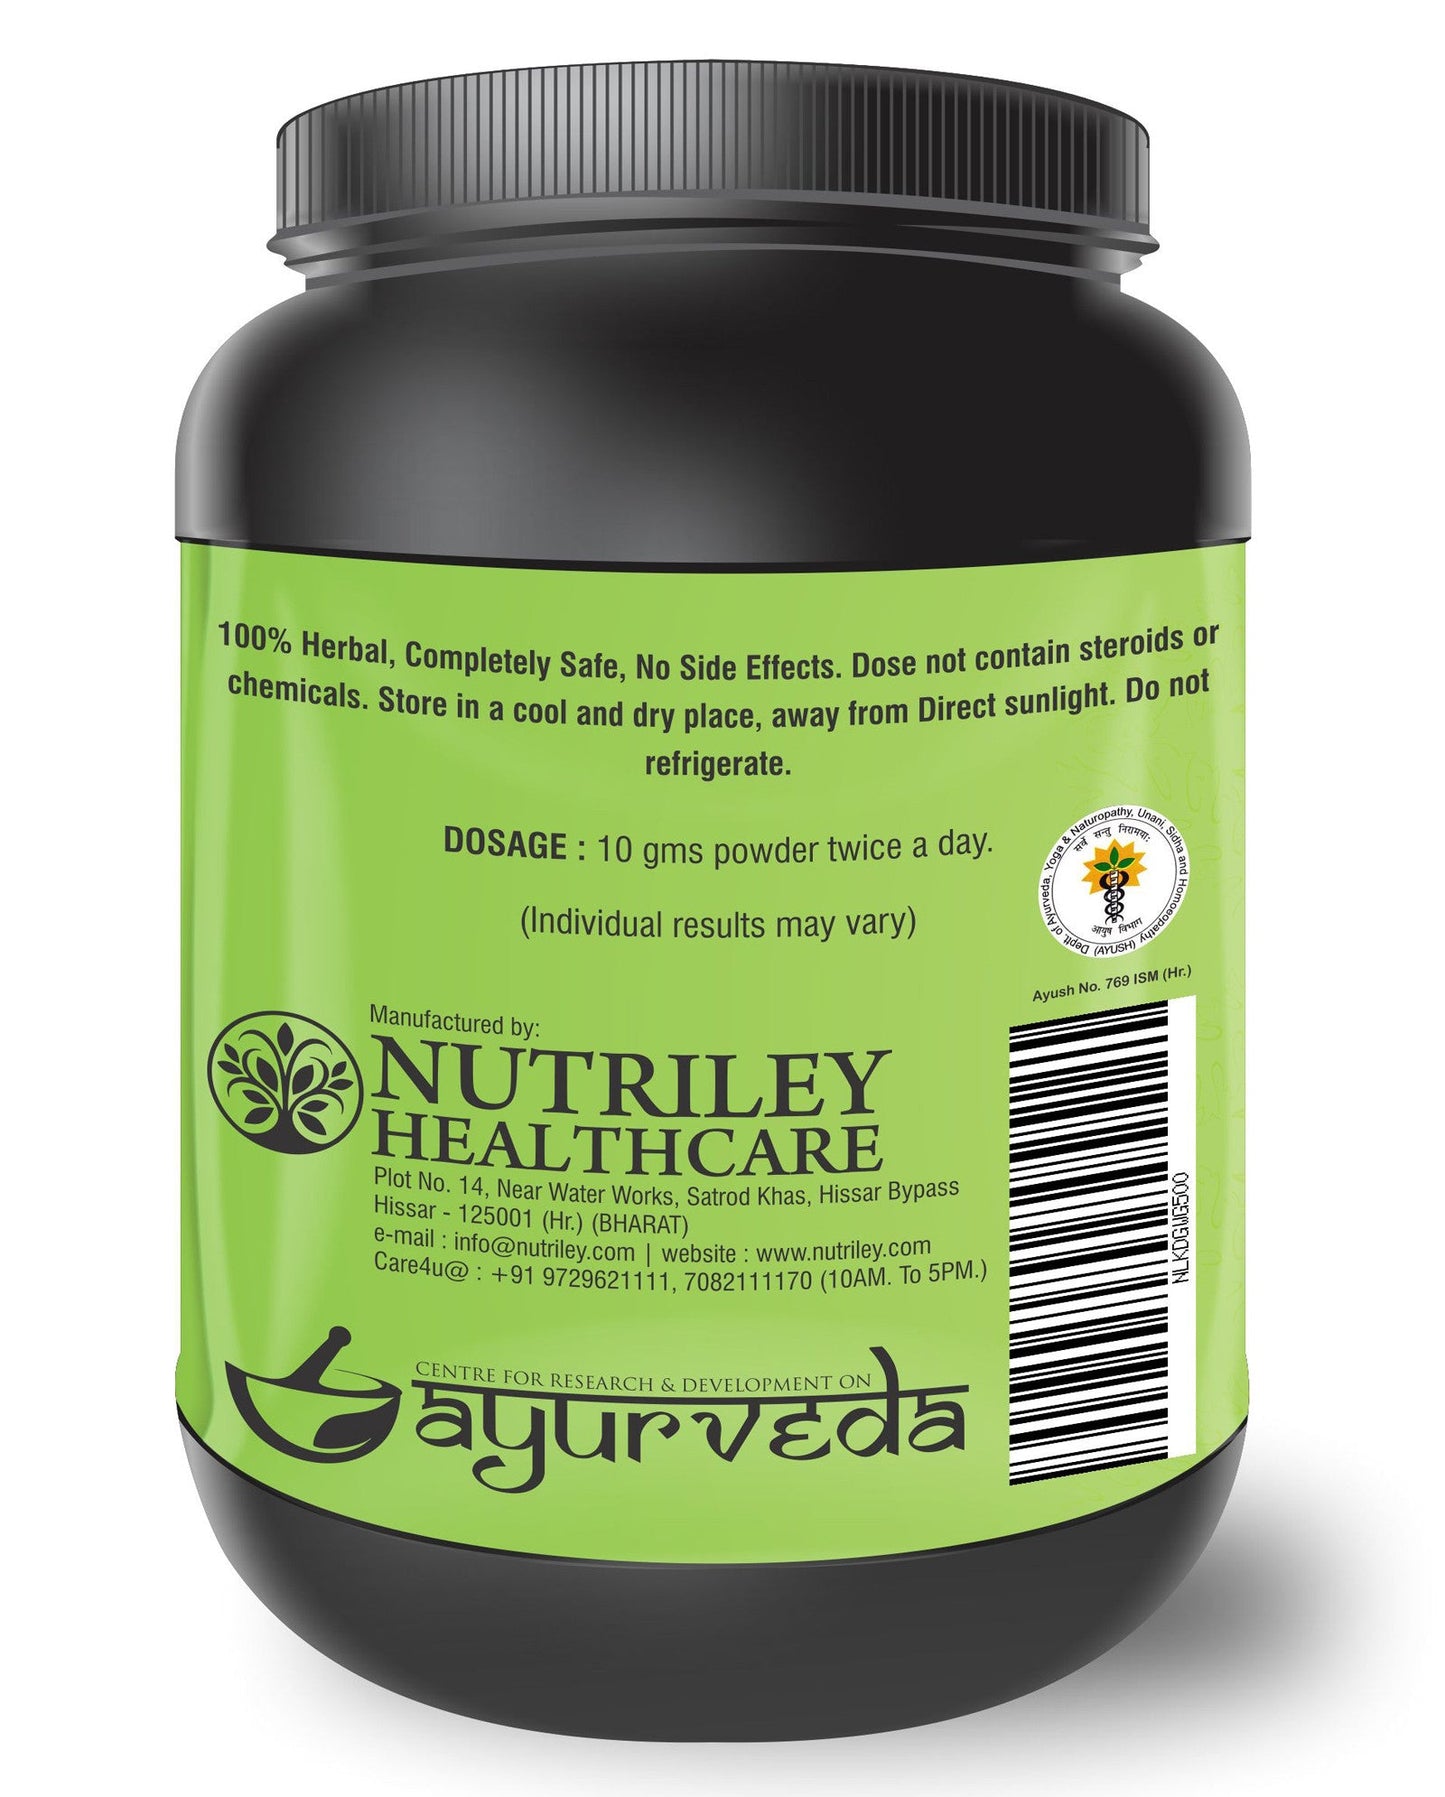 Nutriley Kidigain - Nutritional Supplement for Kids (500 Gms)